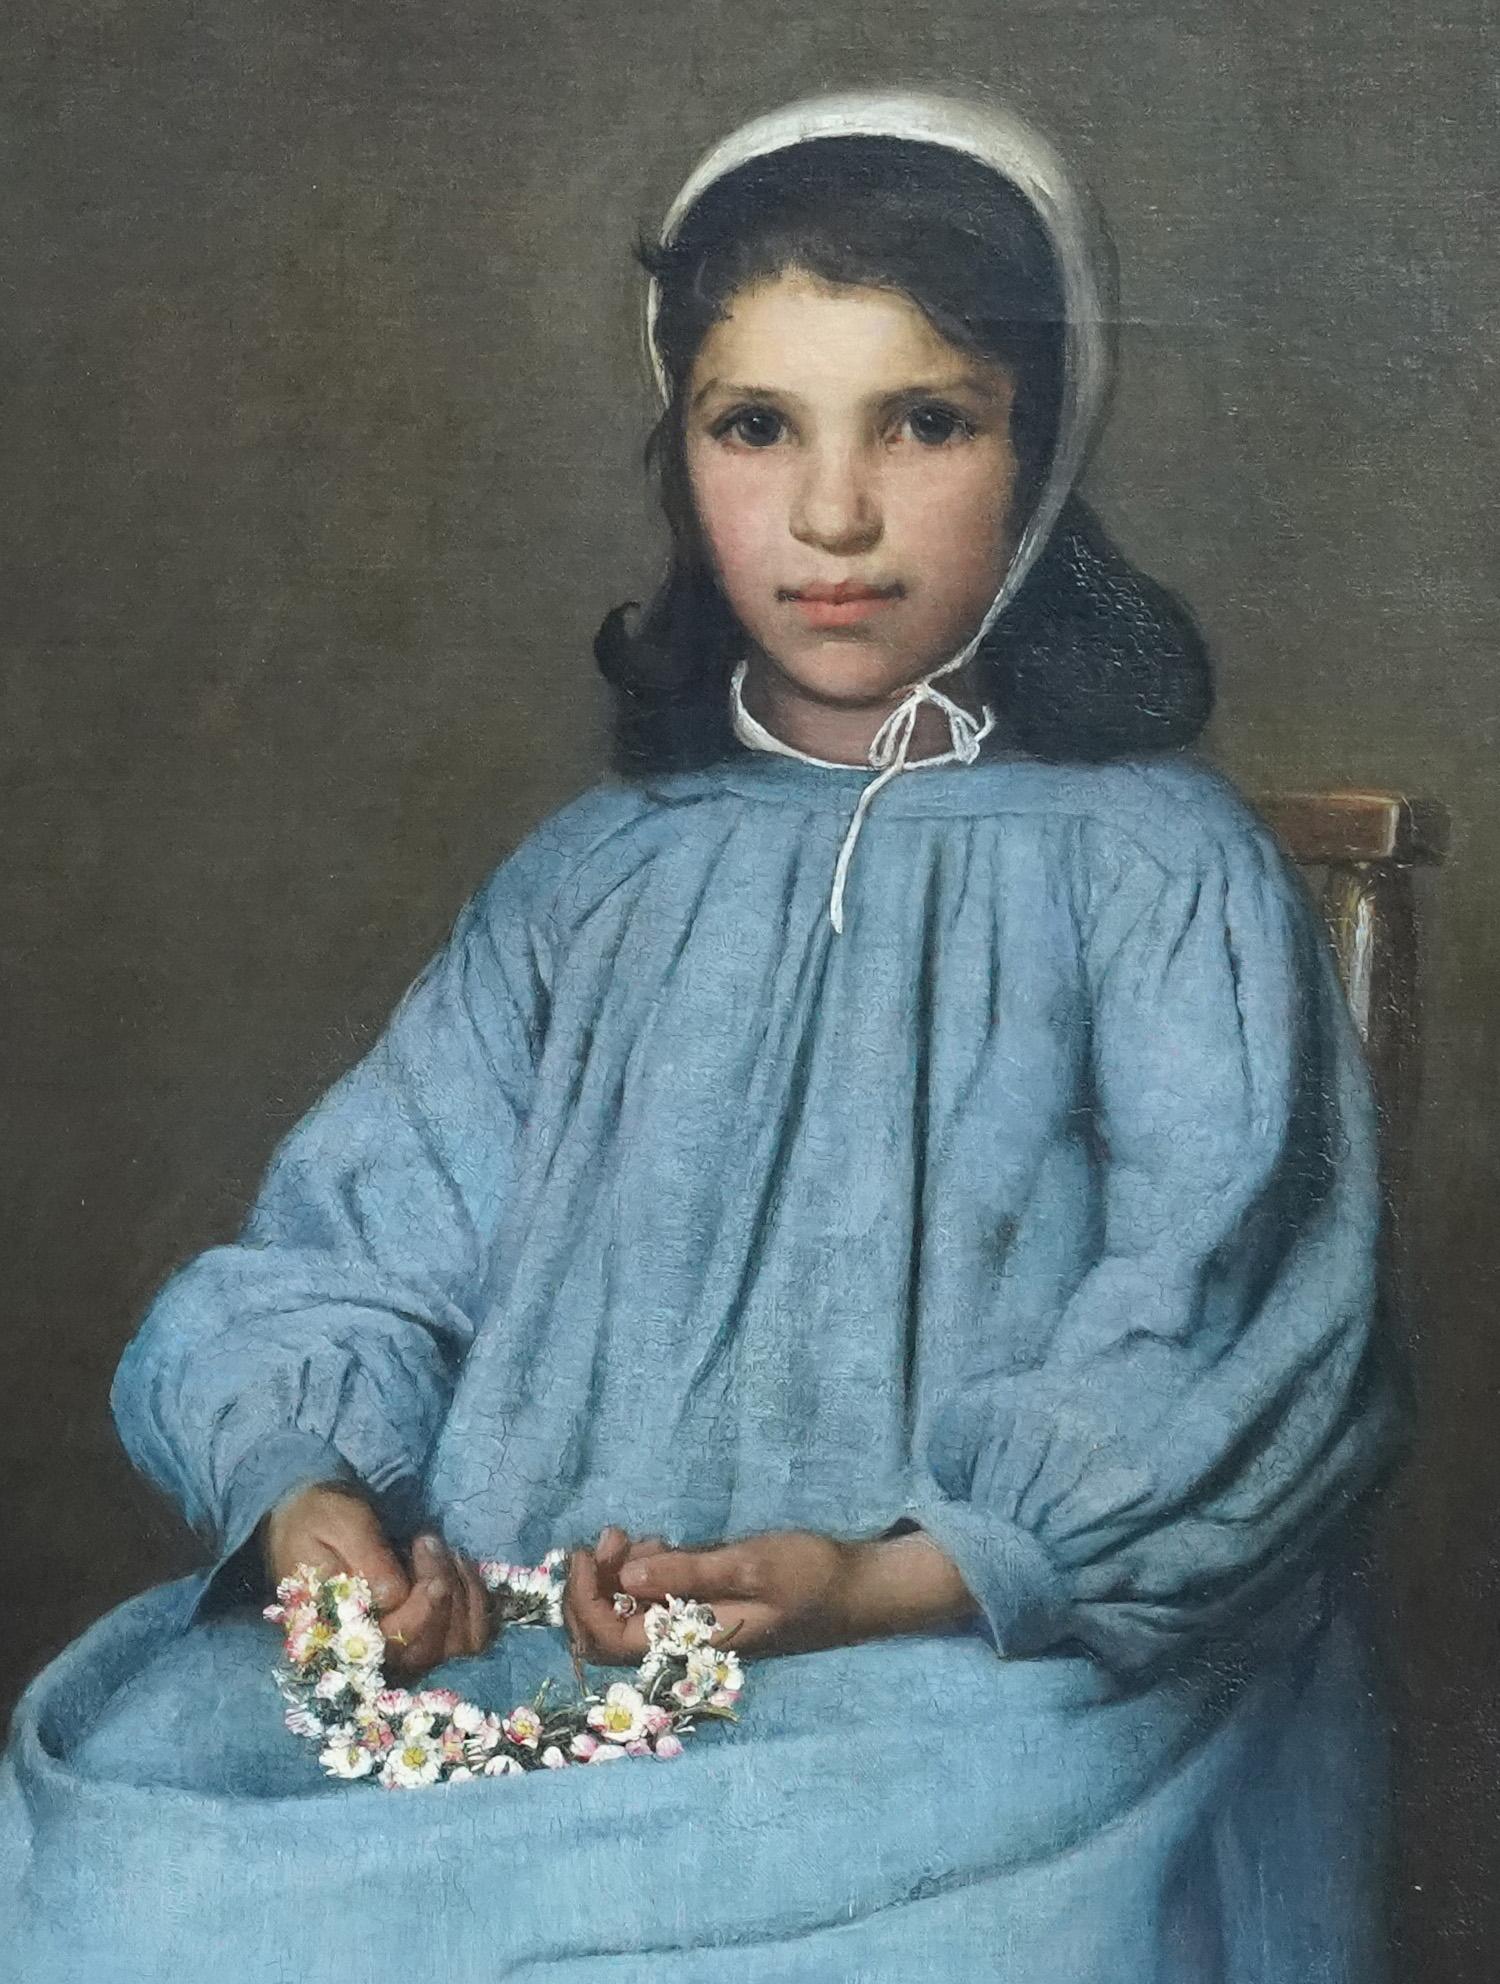 Dies ist eine hervorragende Französisch Breton Schule Porträt Ölgemälde gemalt circa 1880. Das Gemälde ist das sitzende Porträt eines jungen Mädchens in Dreiviertellänge. Sie trägt ein eierschalenblaues Kleid, das so oft auf bretonischen Porträts zu